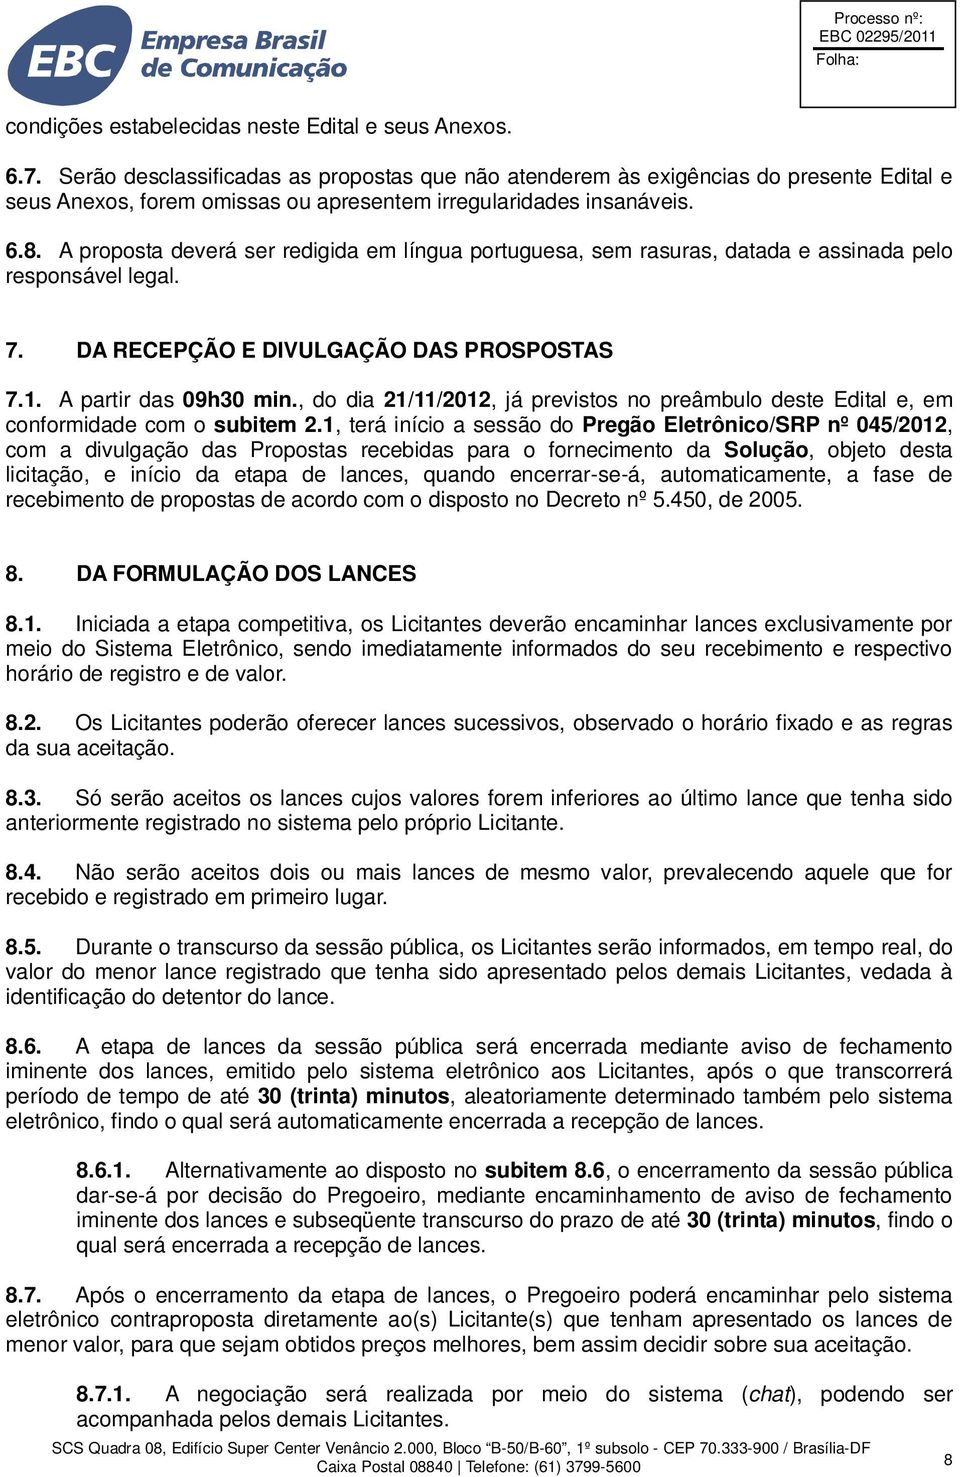 A proposta deverá ser redigida em língua portuguesa, sem rasuras, datada e assinada pelo responsável legal. 7. DA RECEPÇÃO E DIVULGAÇÃO DAS PROSPOSTAS 7.1. A partir das 09h30 min.